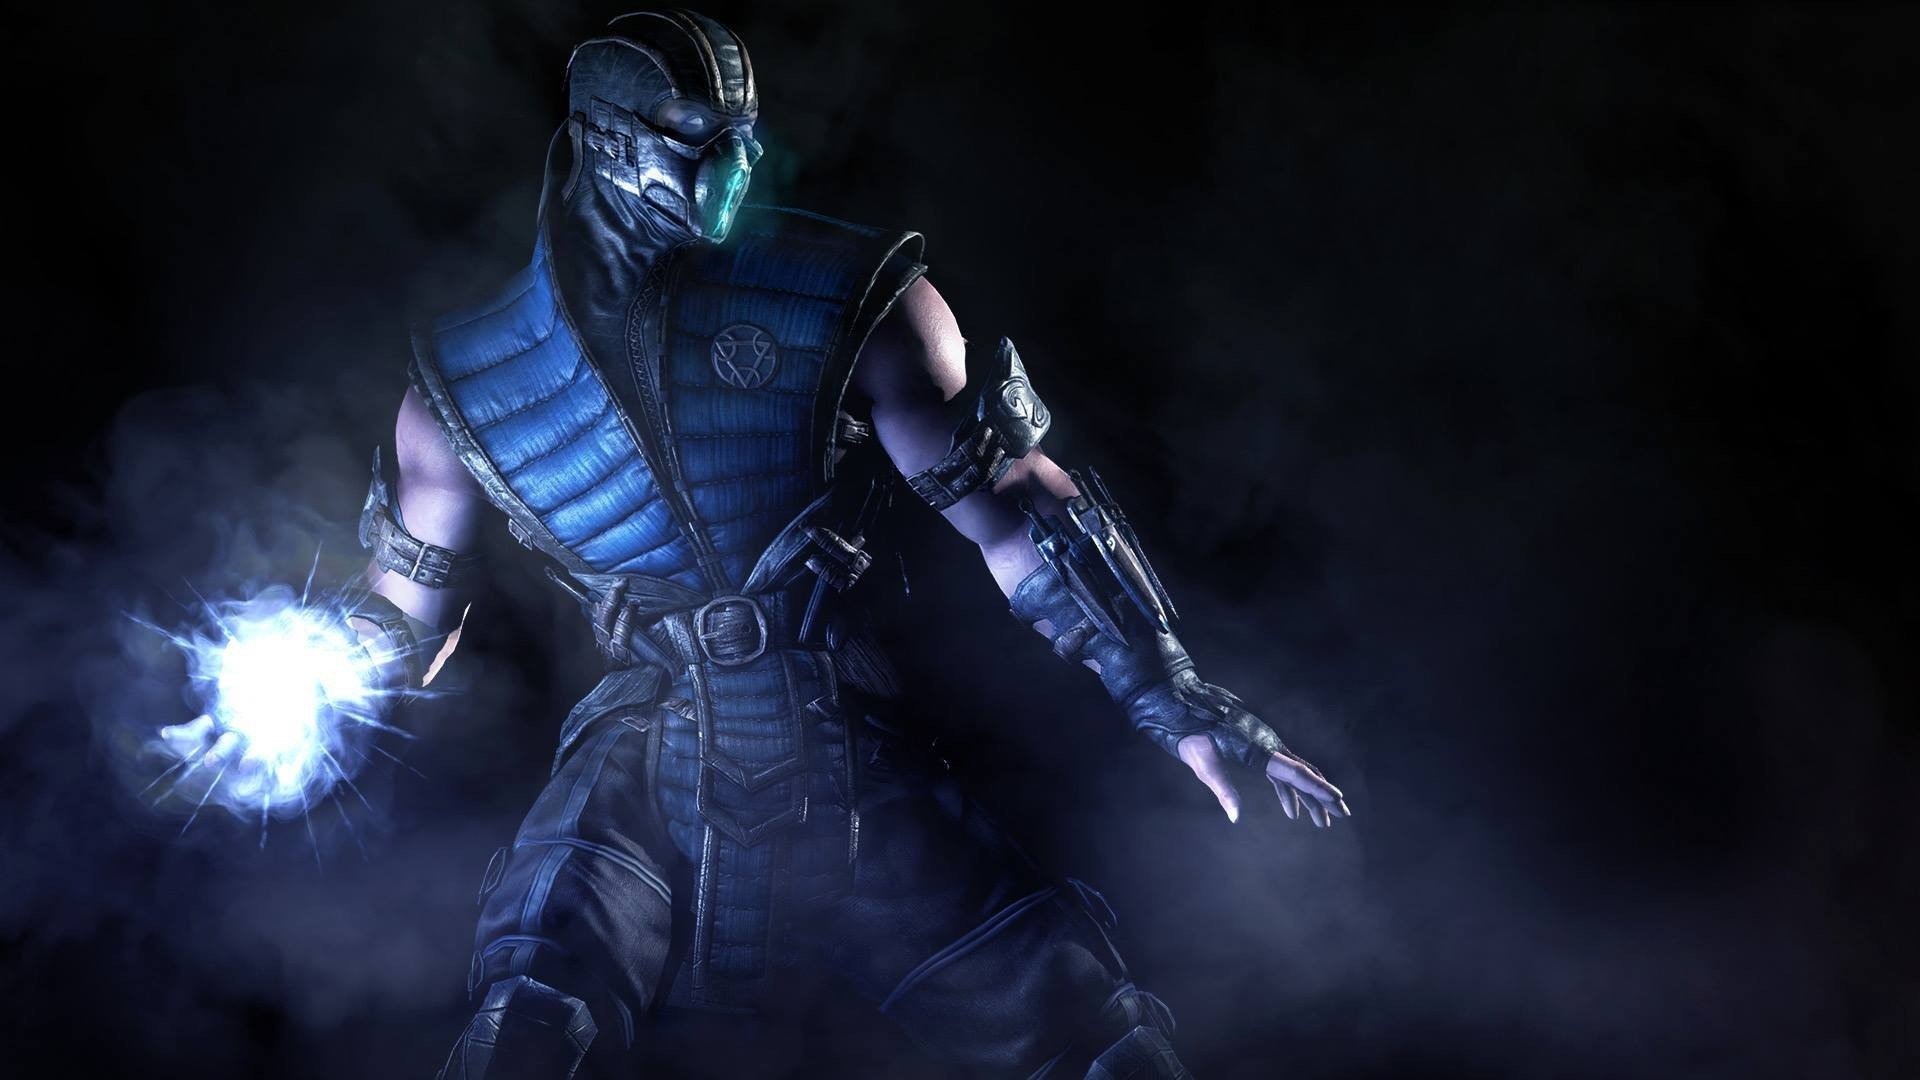 Mortal Kombat X, Sub Zero, PC gaming Wallpaper